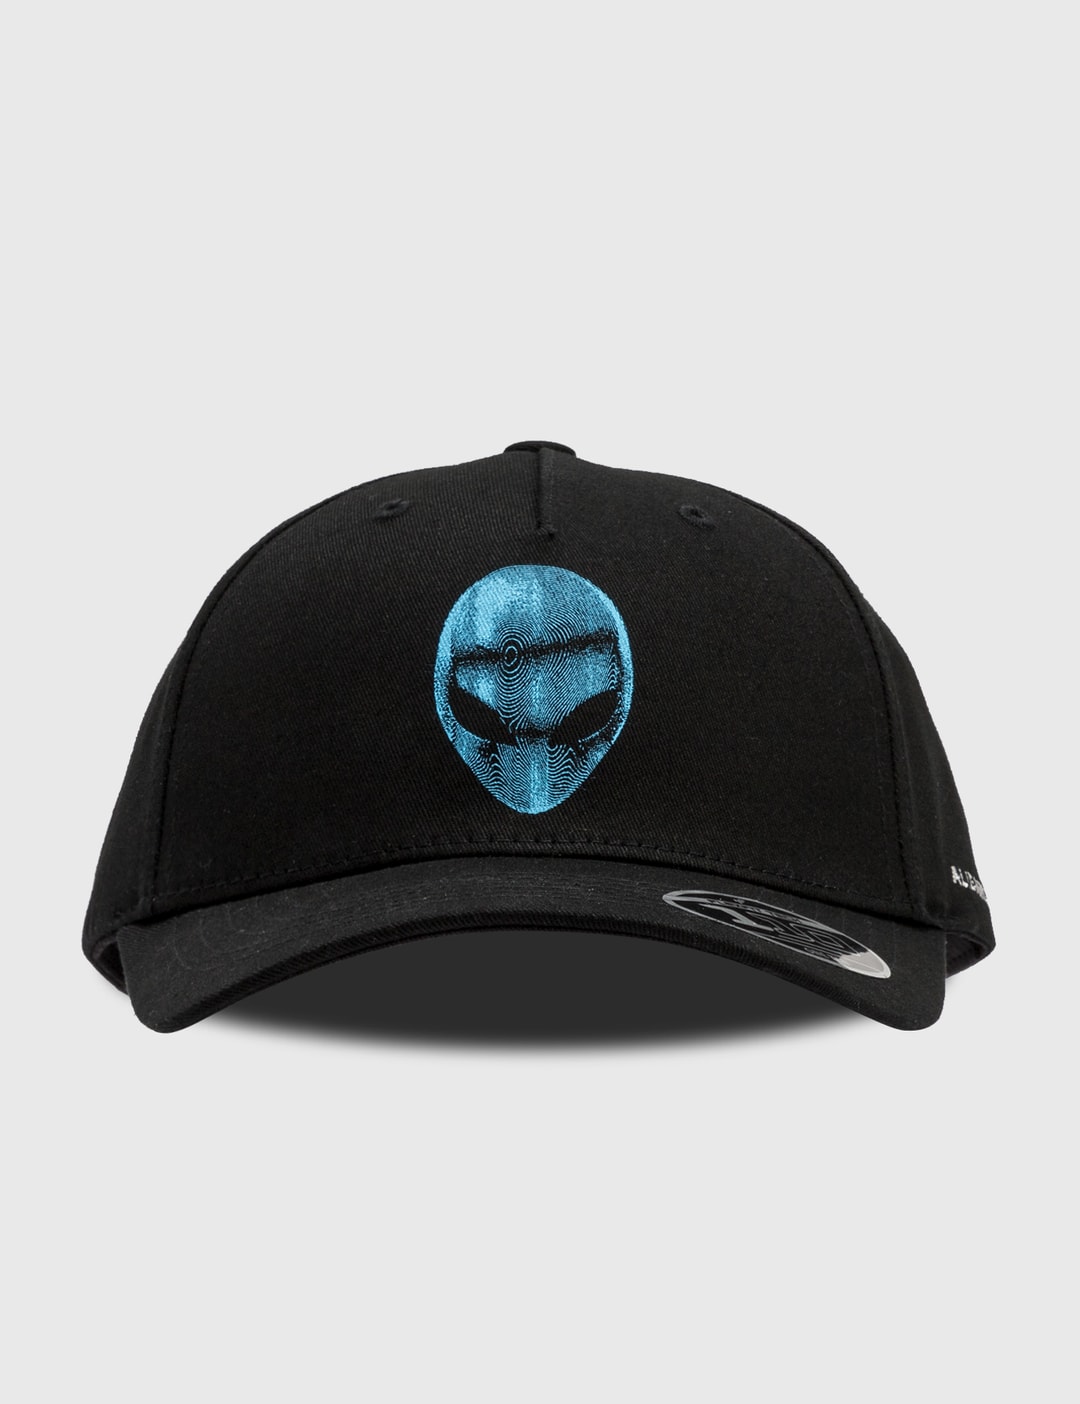 Nike Metal Swoosh Cap in Black — UFO No More